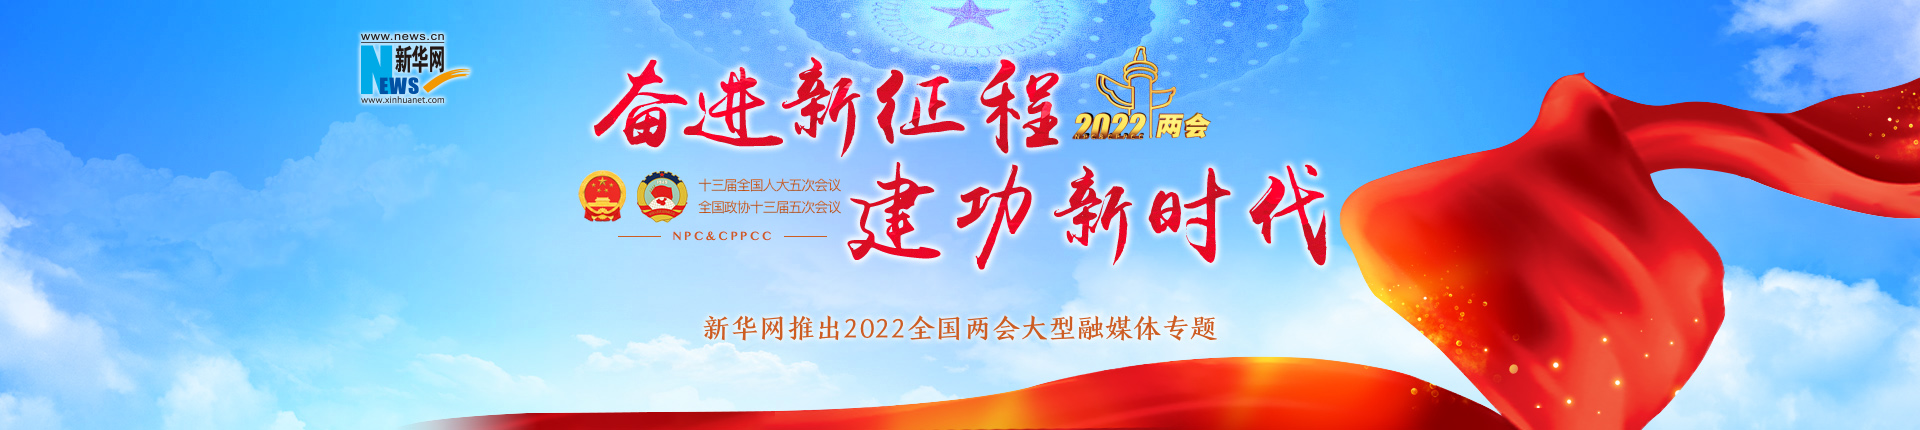 新华网推出2022全国两会大型融媒体专题